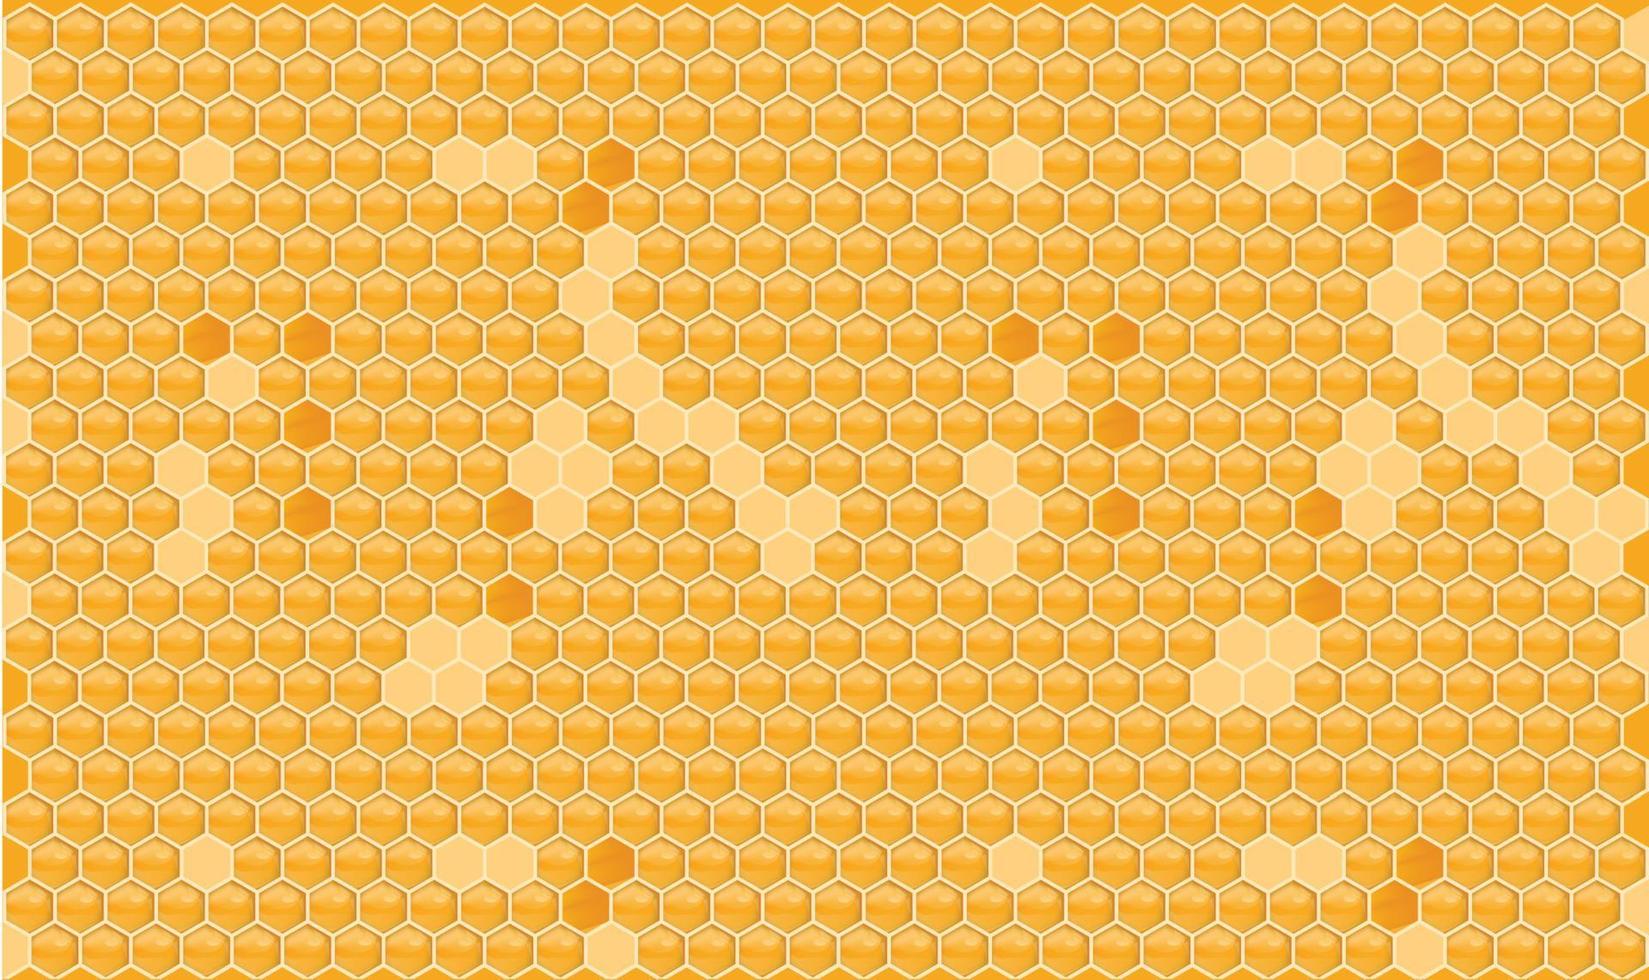 fundo de favo de mel laranja amarelo. colmeia com células de grade hexagonal. textura geométrica perfeita. ilustração vetorial 3d realista. vetor